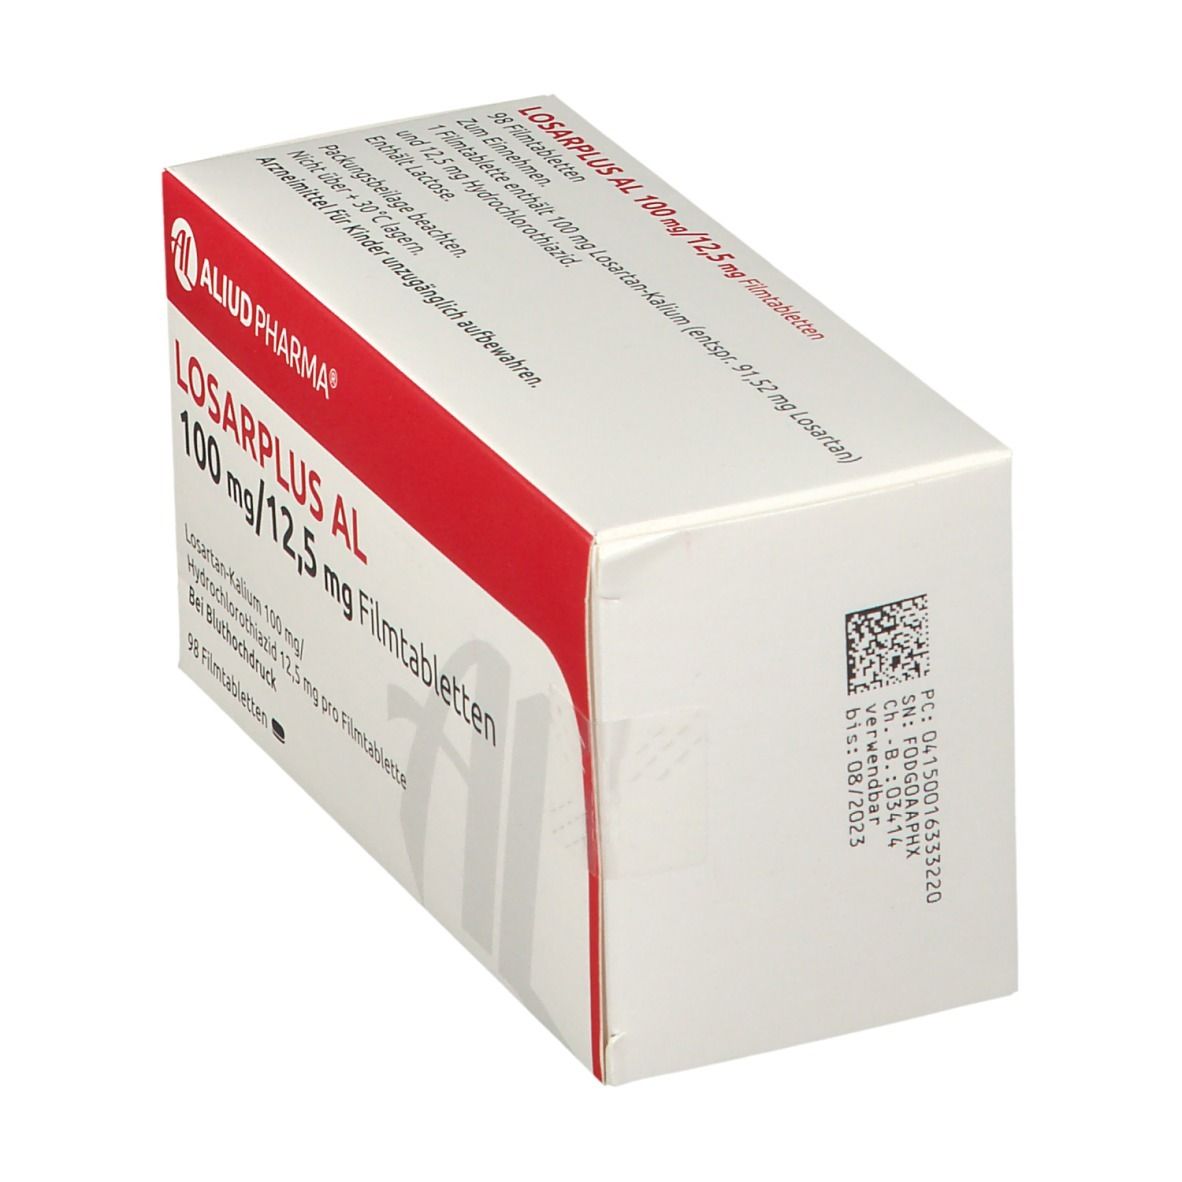 Losarplus AL 100 mg/12,5 mg